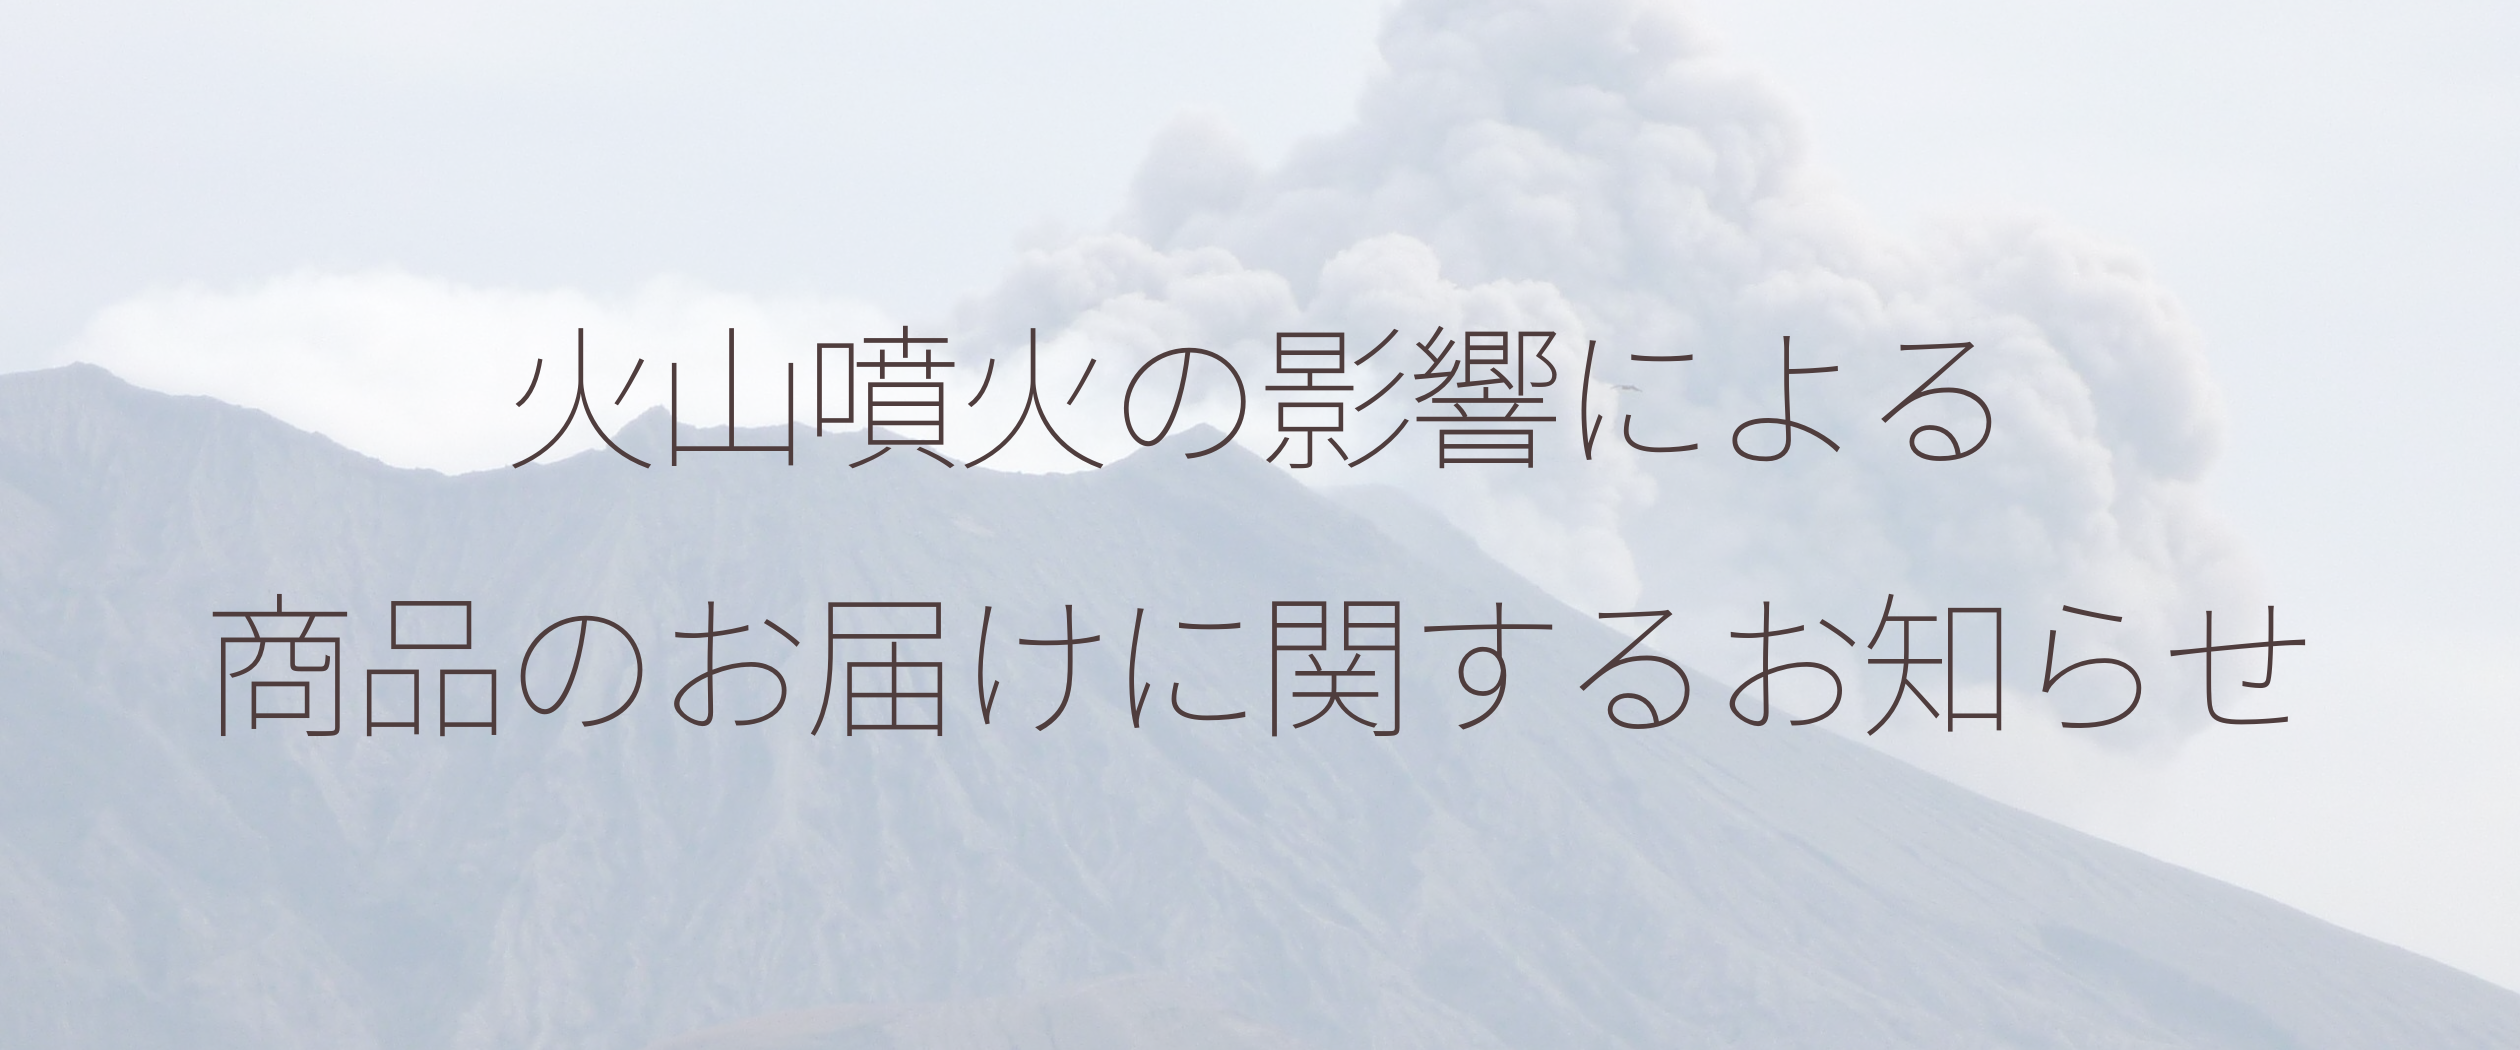 火山噴火による影響について（7月25日 12:00更新）